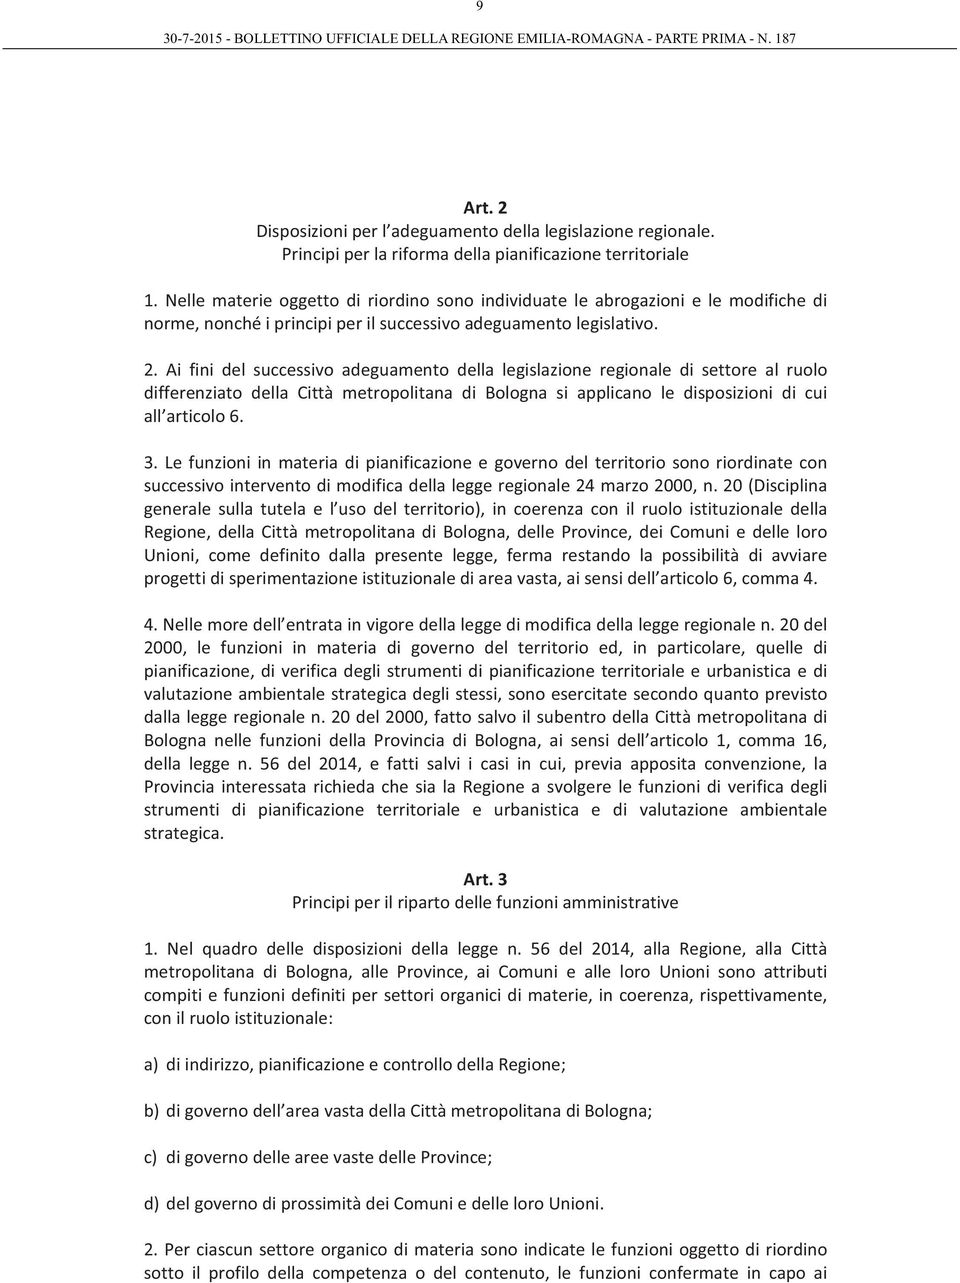 Ai fini del successivo adeguamento della legislazione regionale di settore al ruolo differenziato della Città metropolitana di Bologna si applicano le disposizioni di cui all articolo 6. 3.